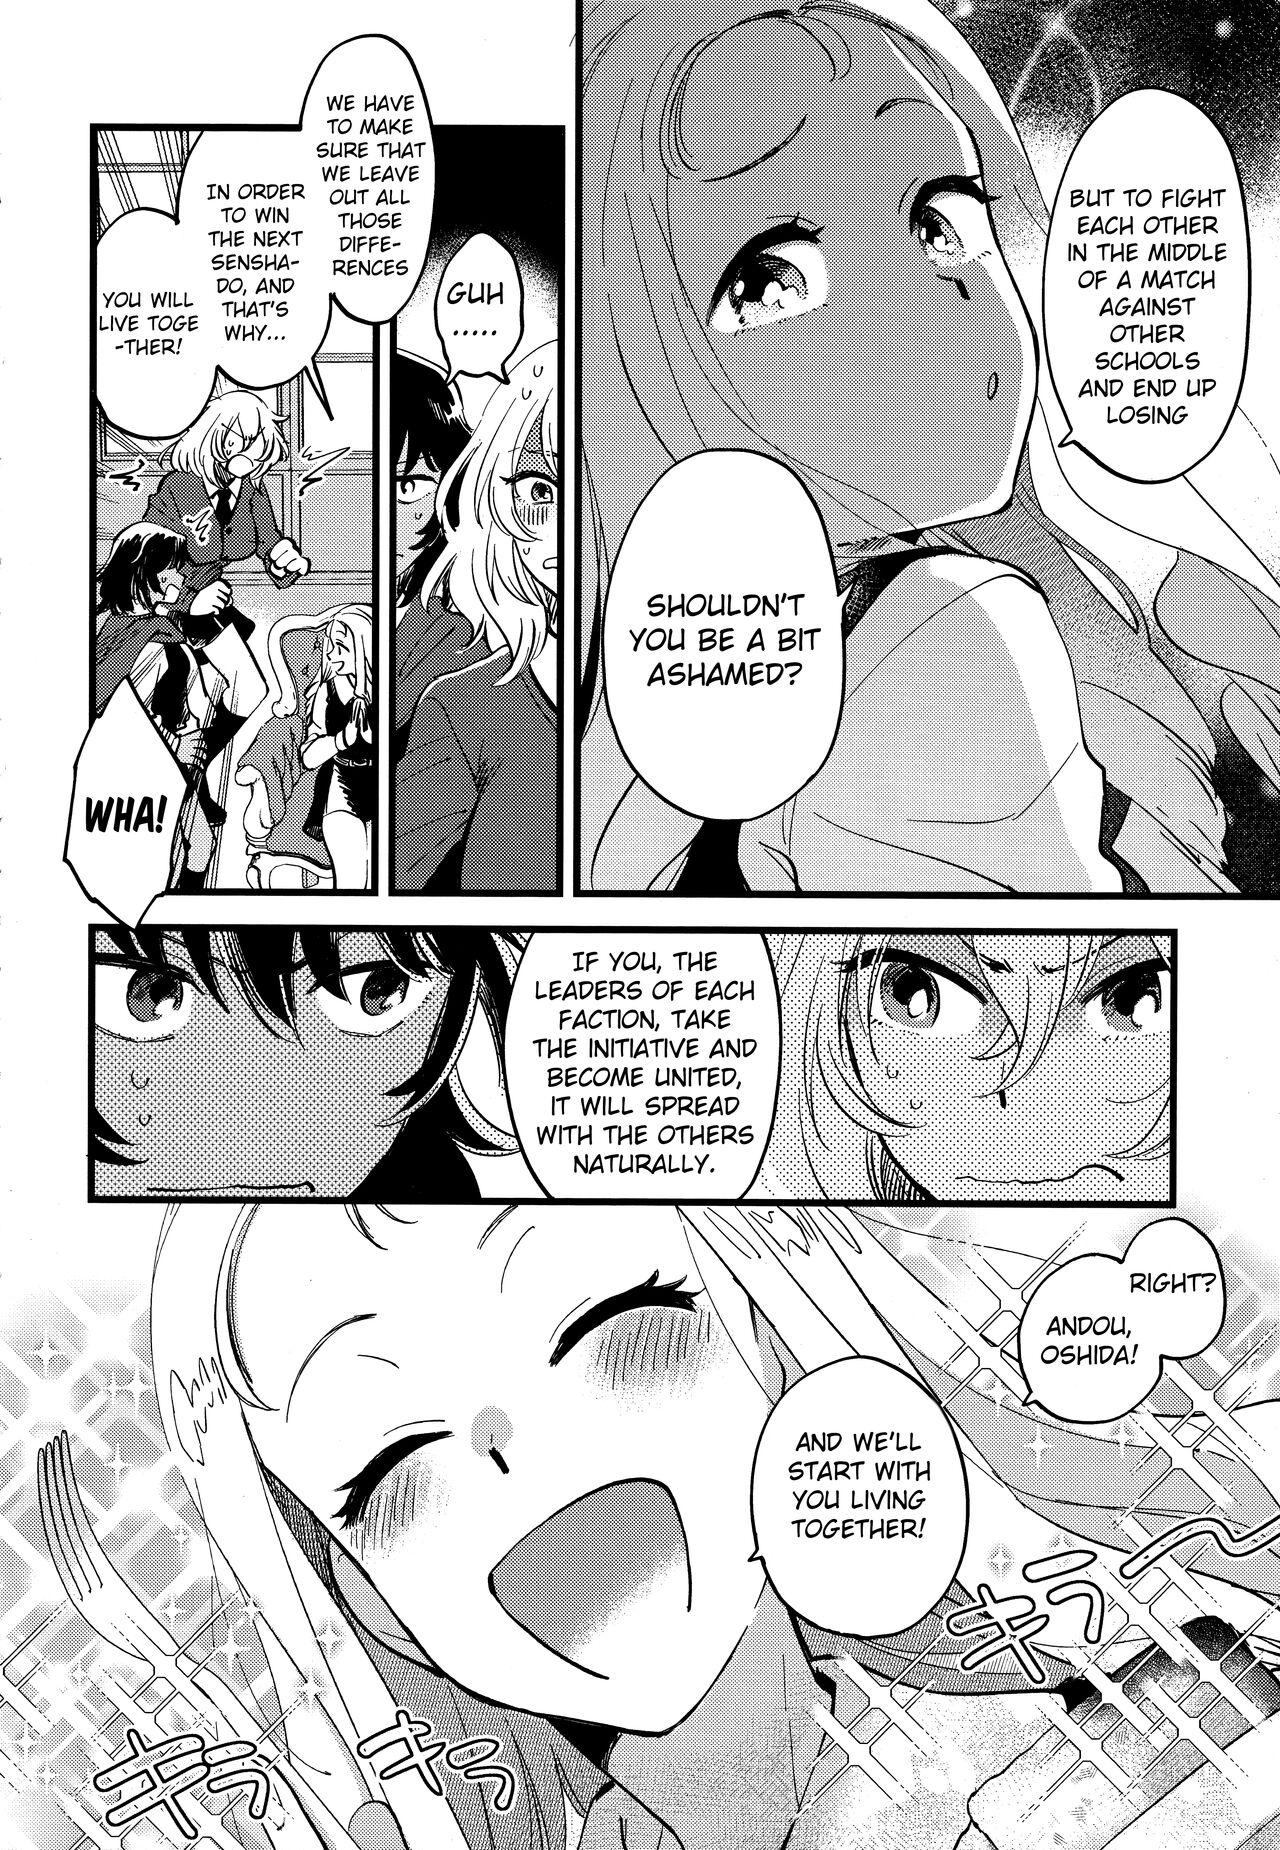 Longhair AnOshi, Nakayoku! - Girls und panzer Fetish - Page 3